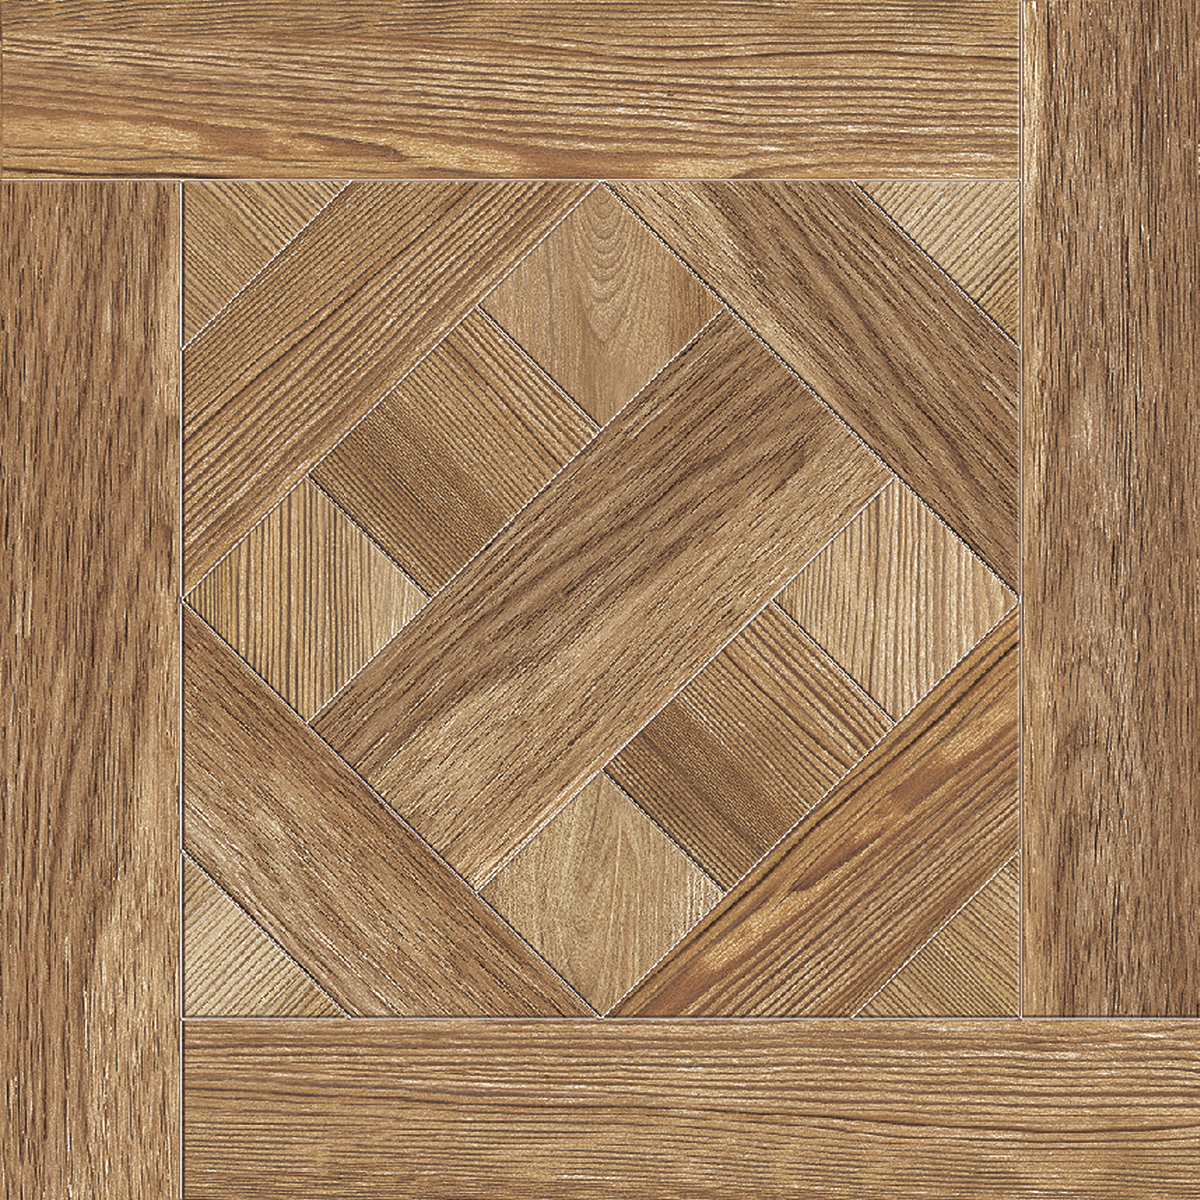 欧模网 3d贴图下载 木纹木材3d贴图下载 木地板3d贴图下载 icc瓷砖